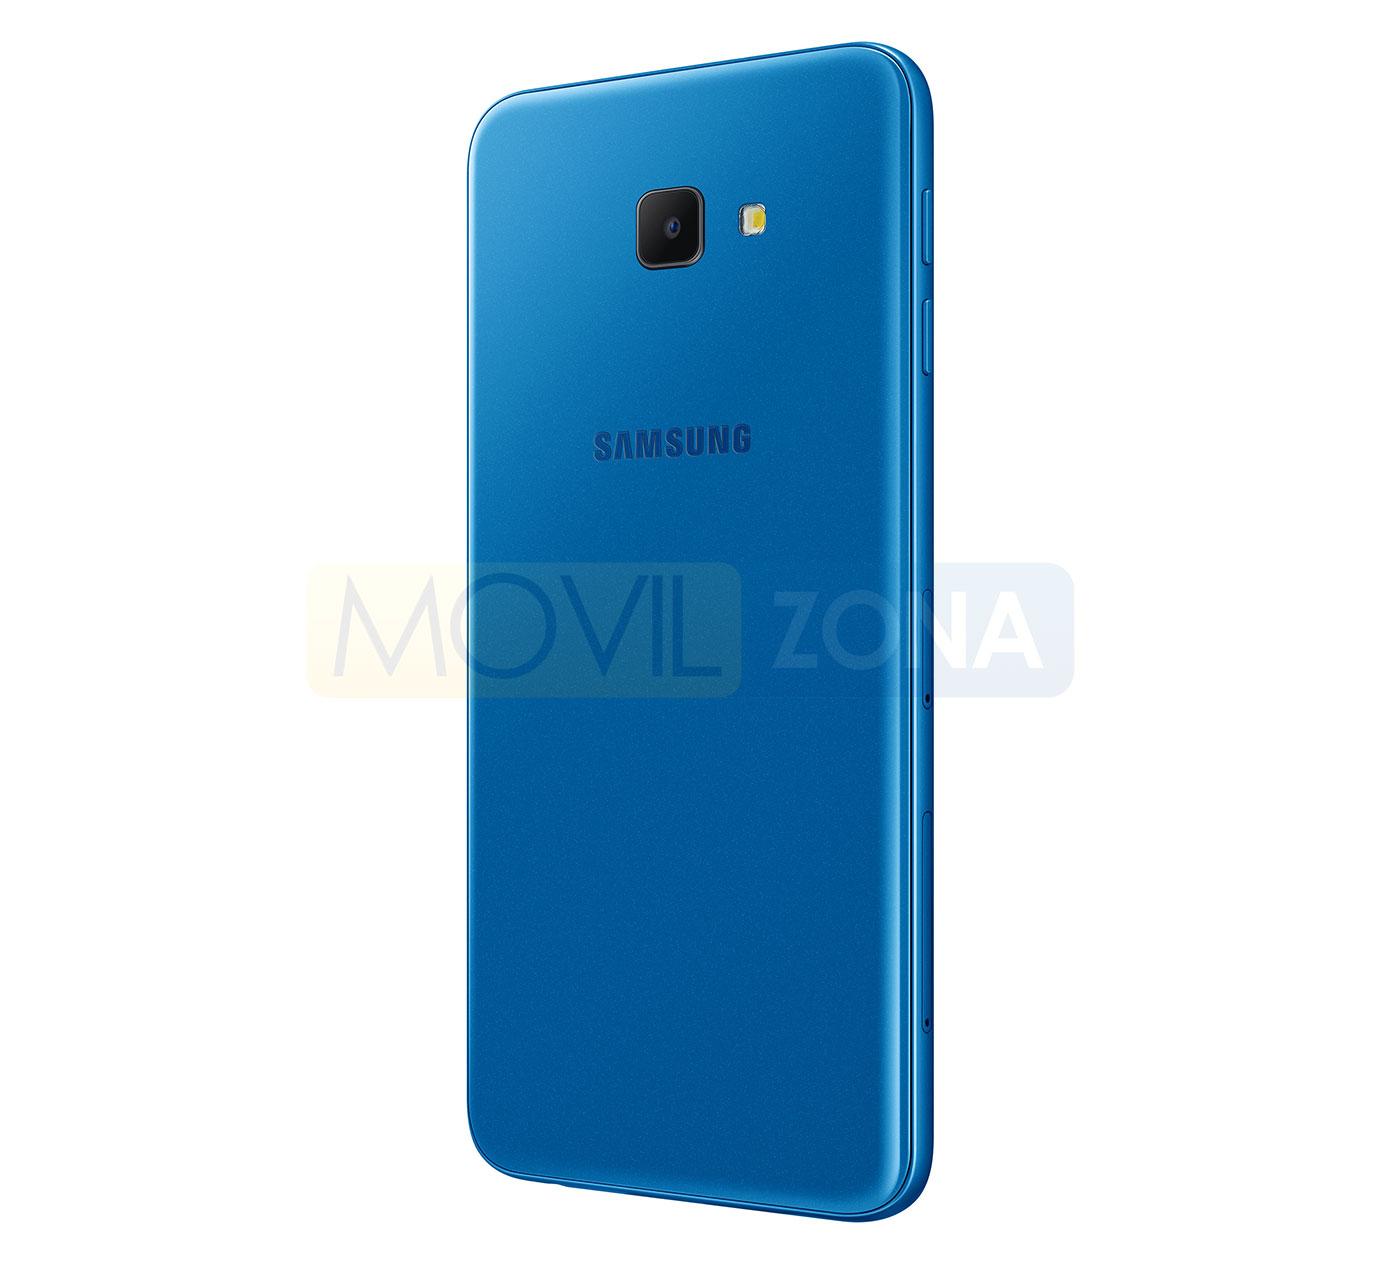 Samsung Galaxy J4 Core color